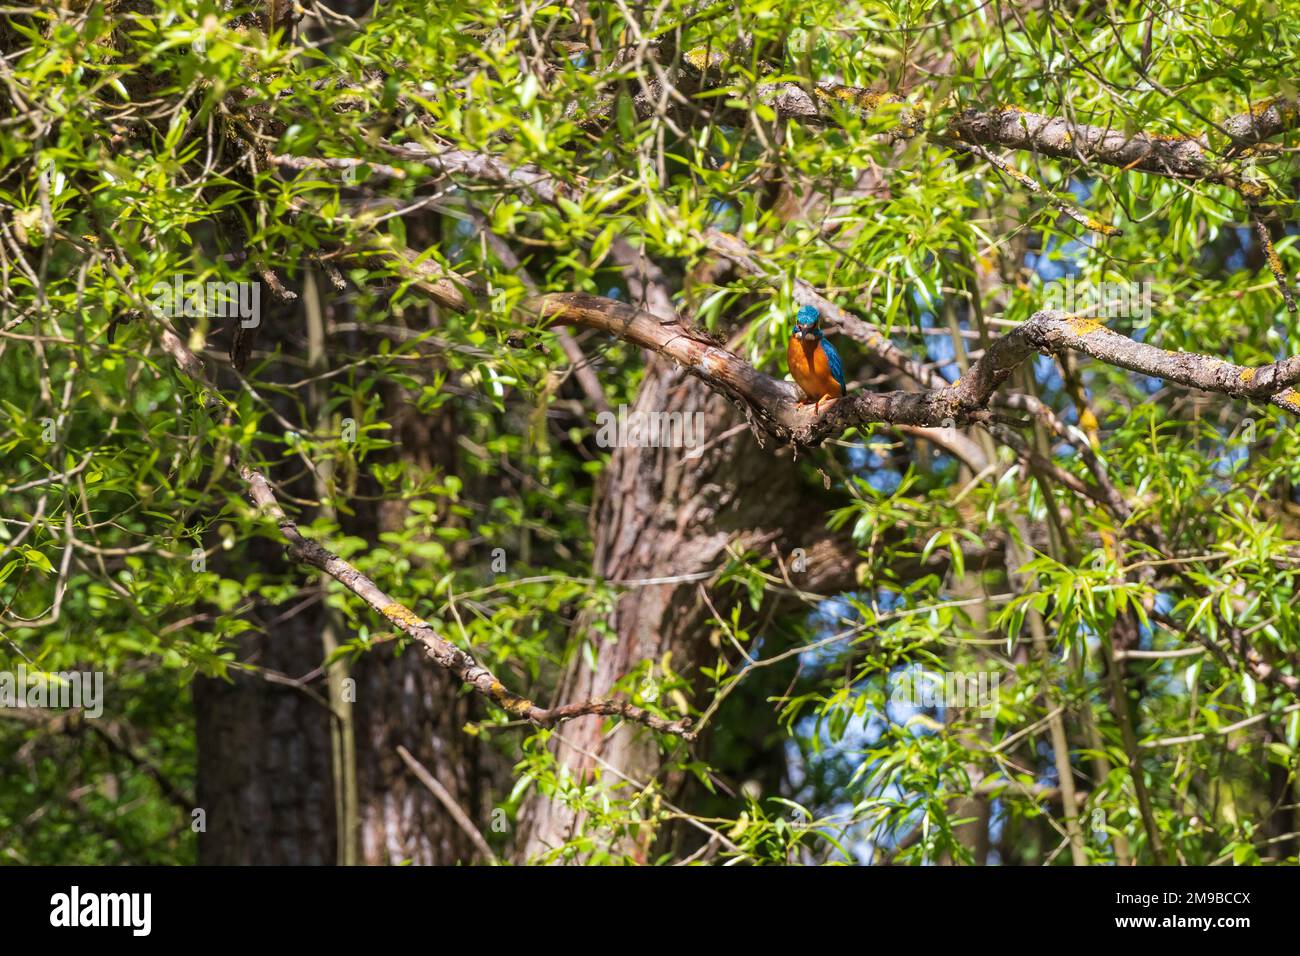 Schöner farbenfroher Vogel Eisvögel, der auf einem Ast sitzt. Seine Federfarbe ist blau und orange. Wildes Foto Stockfoto